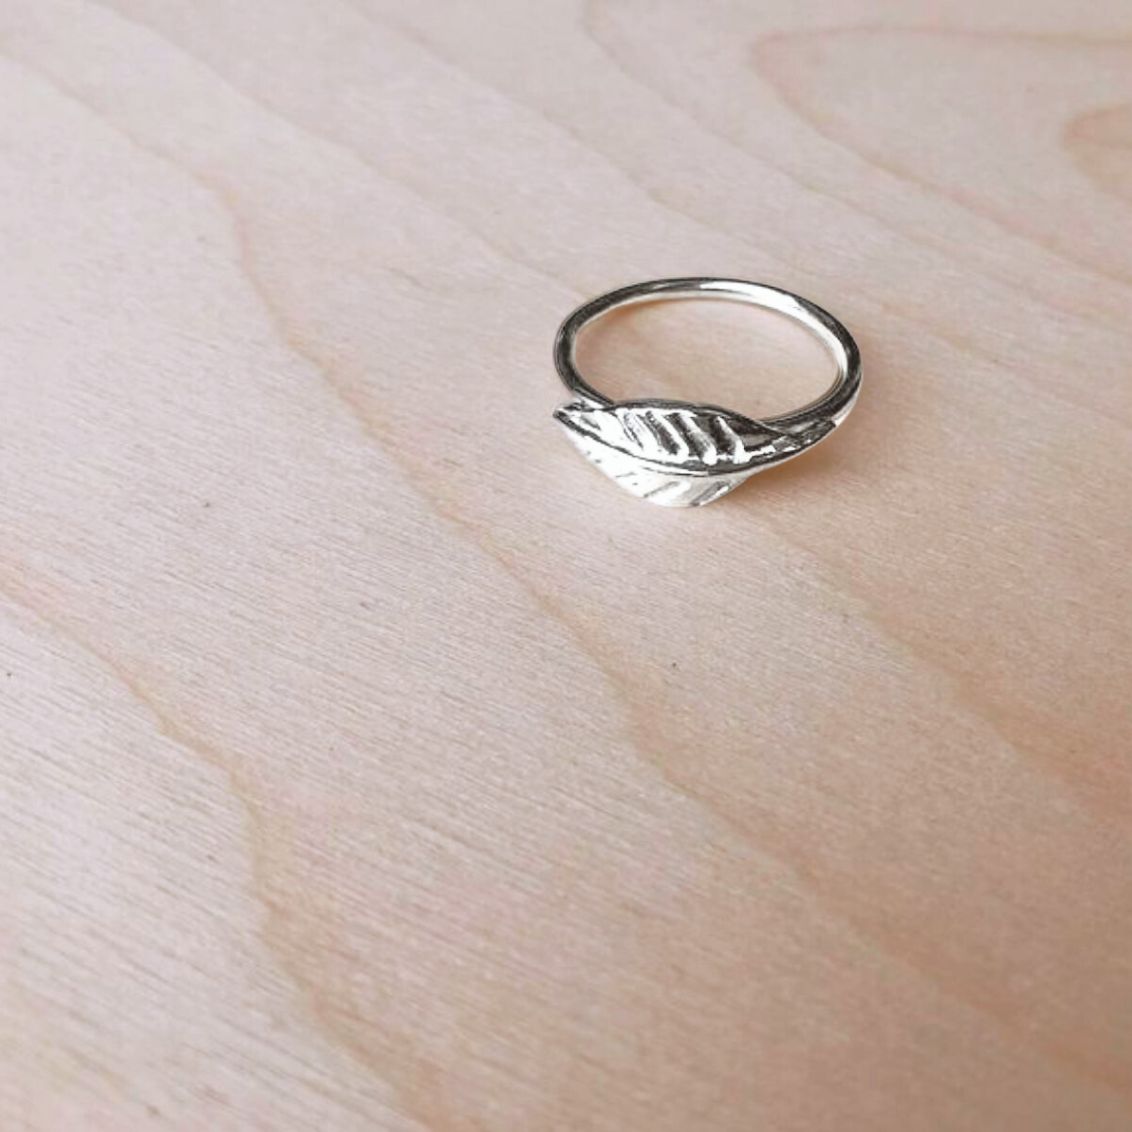 Carved Leaf Ring